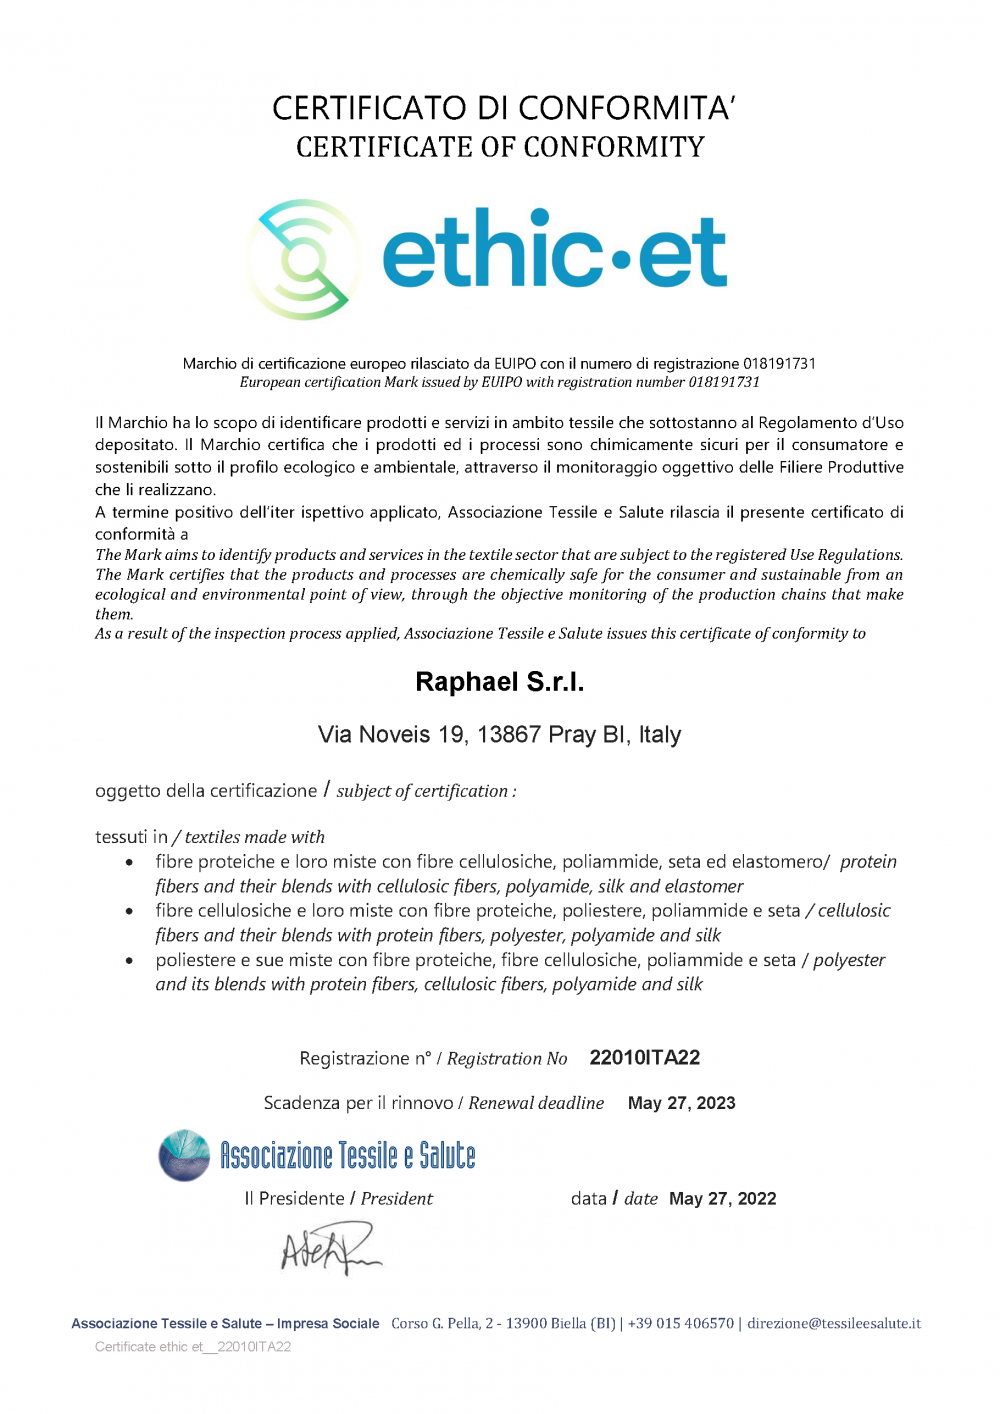 Certificate ethic et__22010ITA22